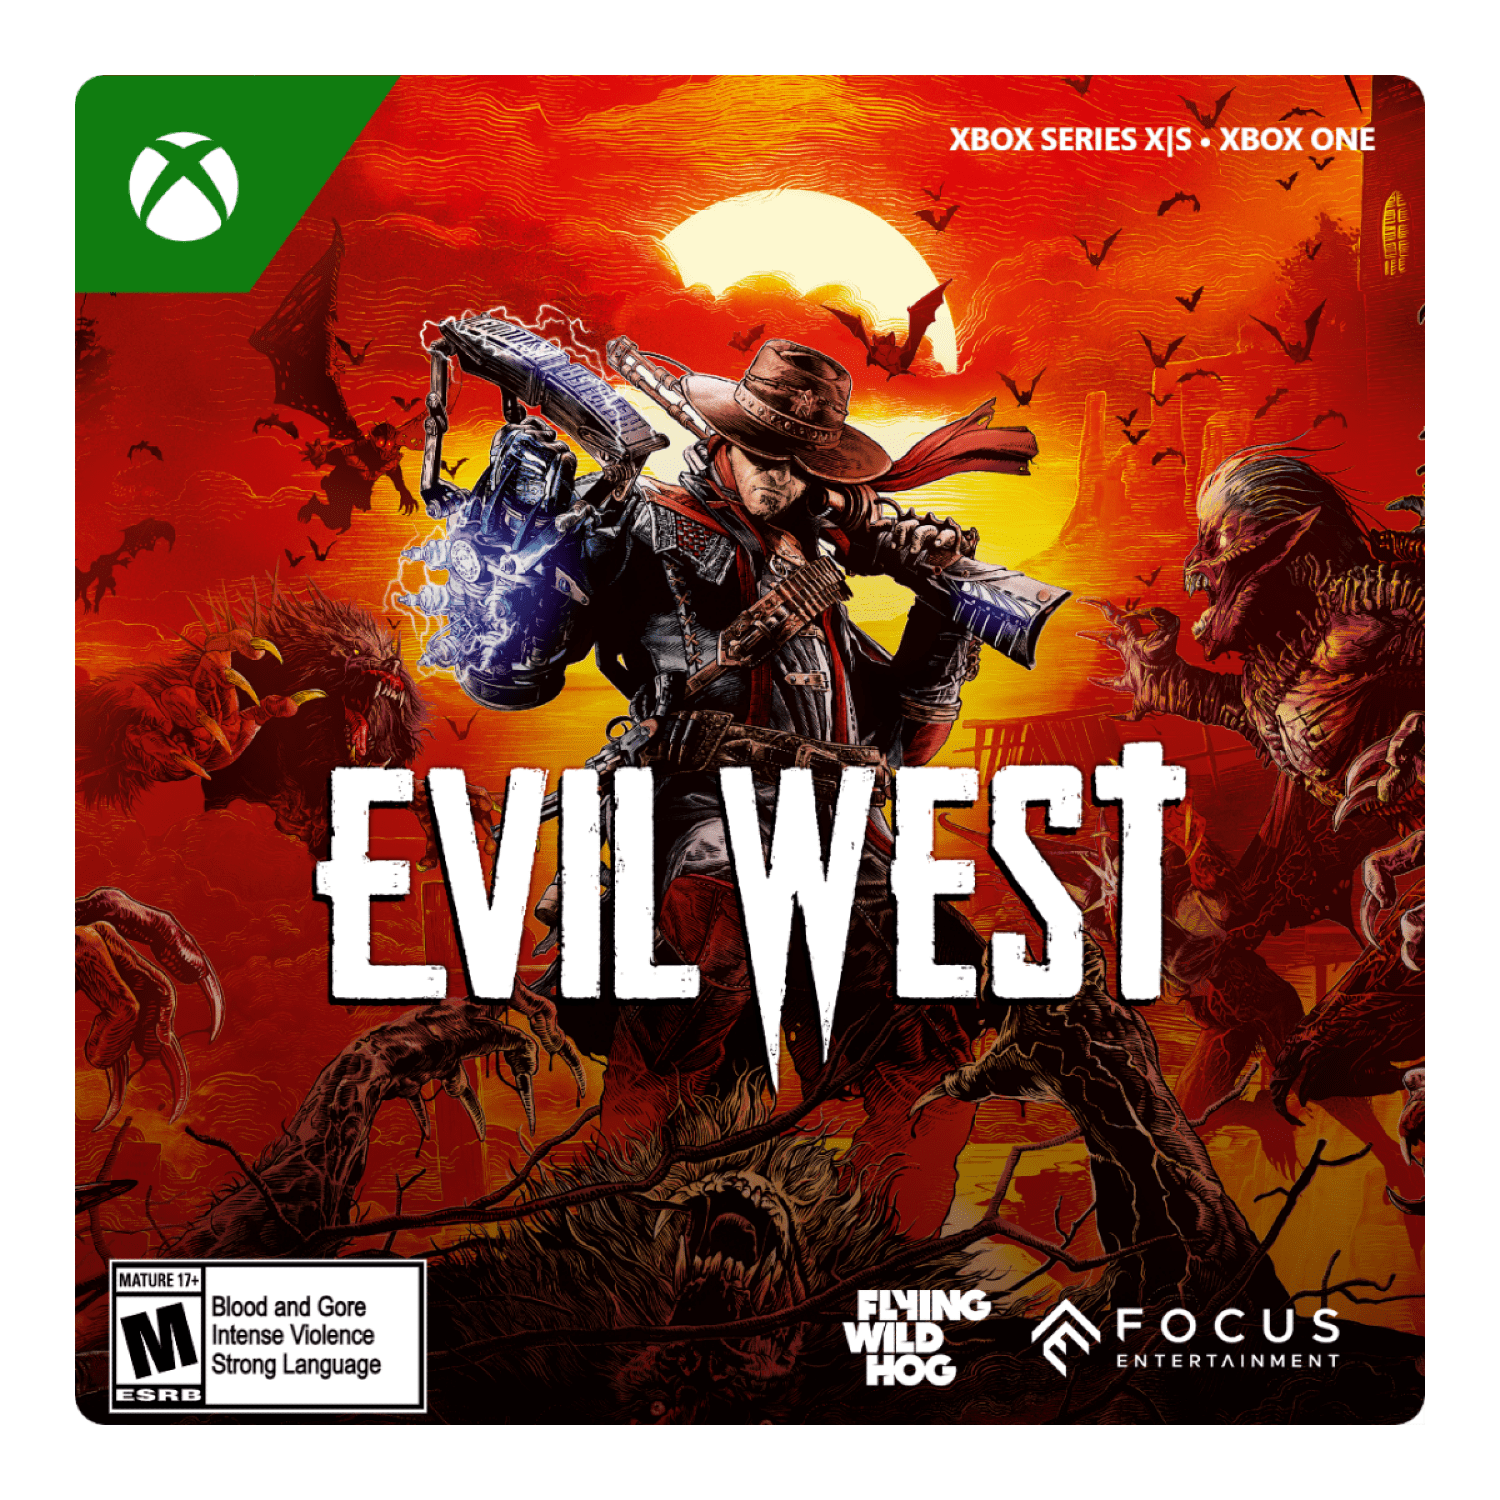 Evil West ESTÁ RODANDO BEM no Xbox Series S? 